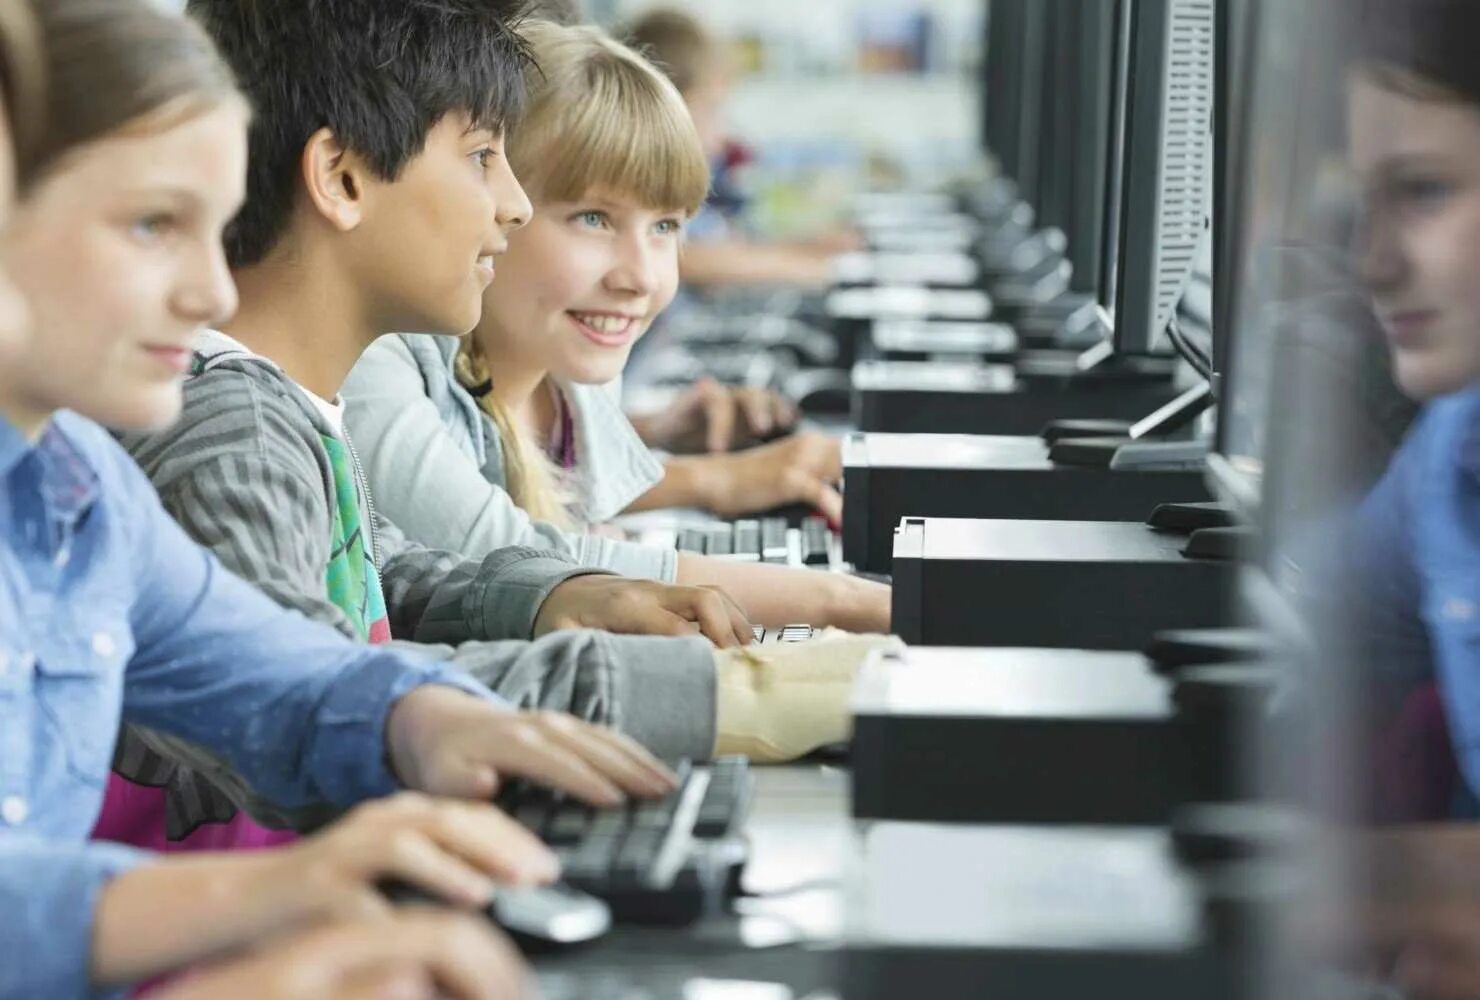 1 класс 1 ученик 1 компьютер. Компьютер для школьника. Компьютер в школе. Ученик за компьютером. Дети за компьютером в школе.